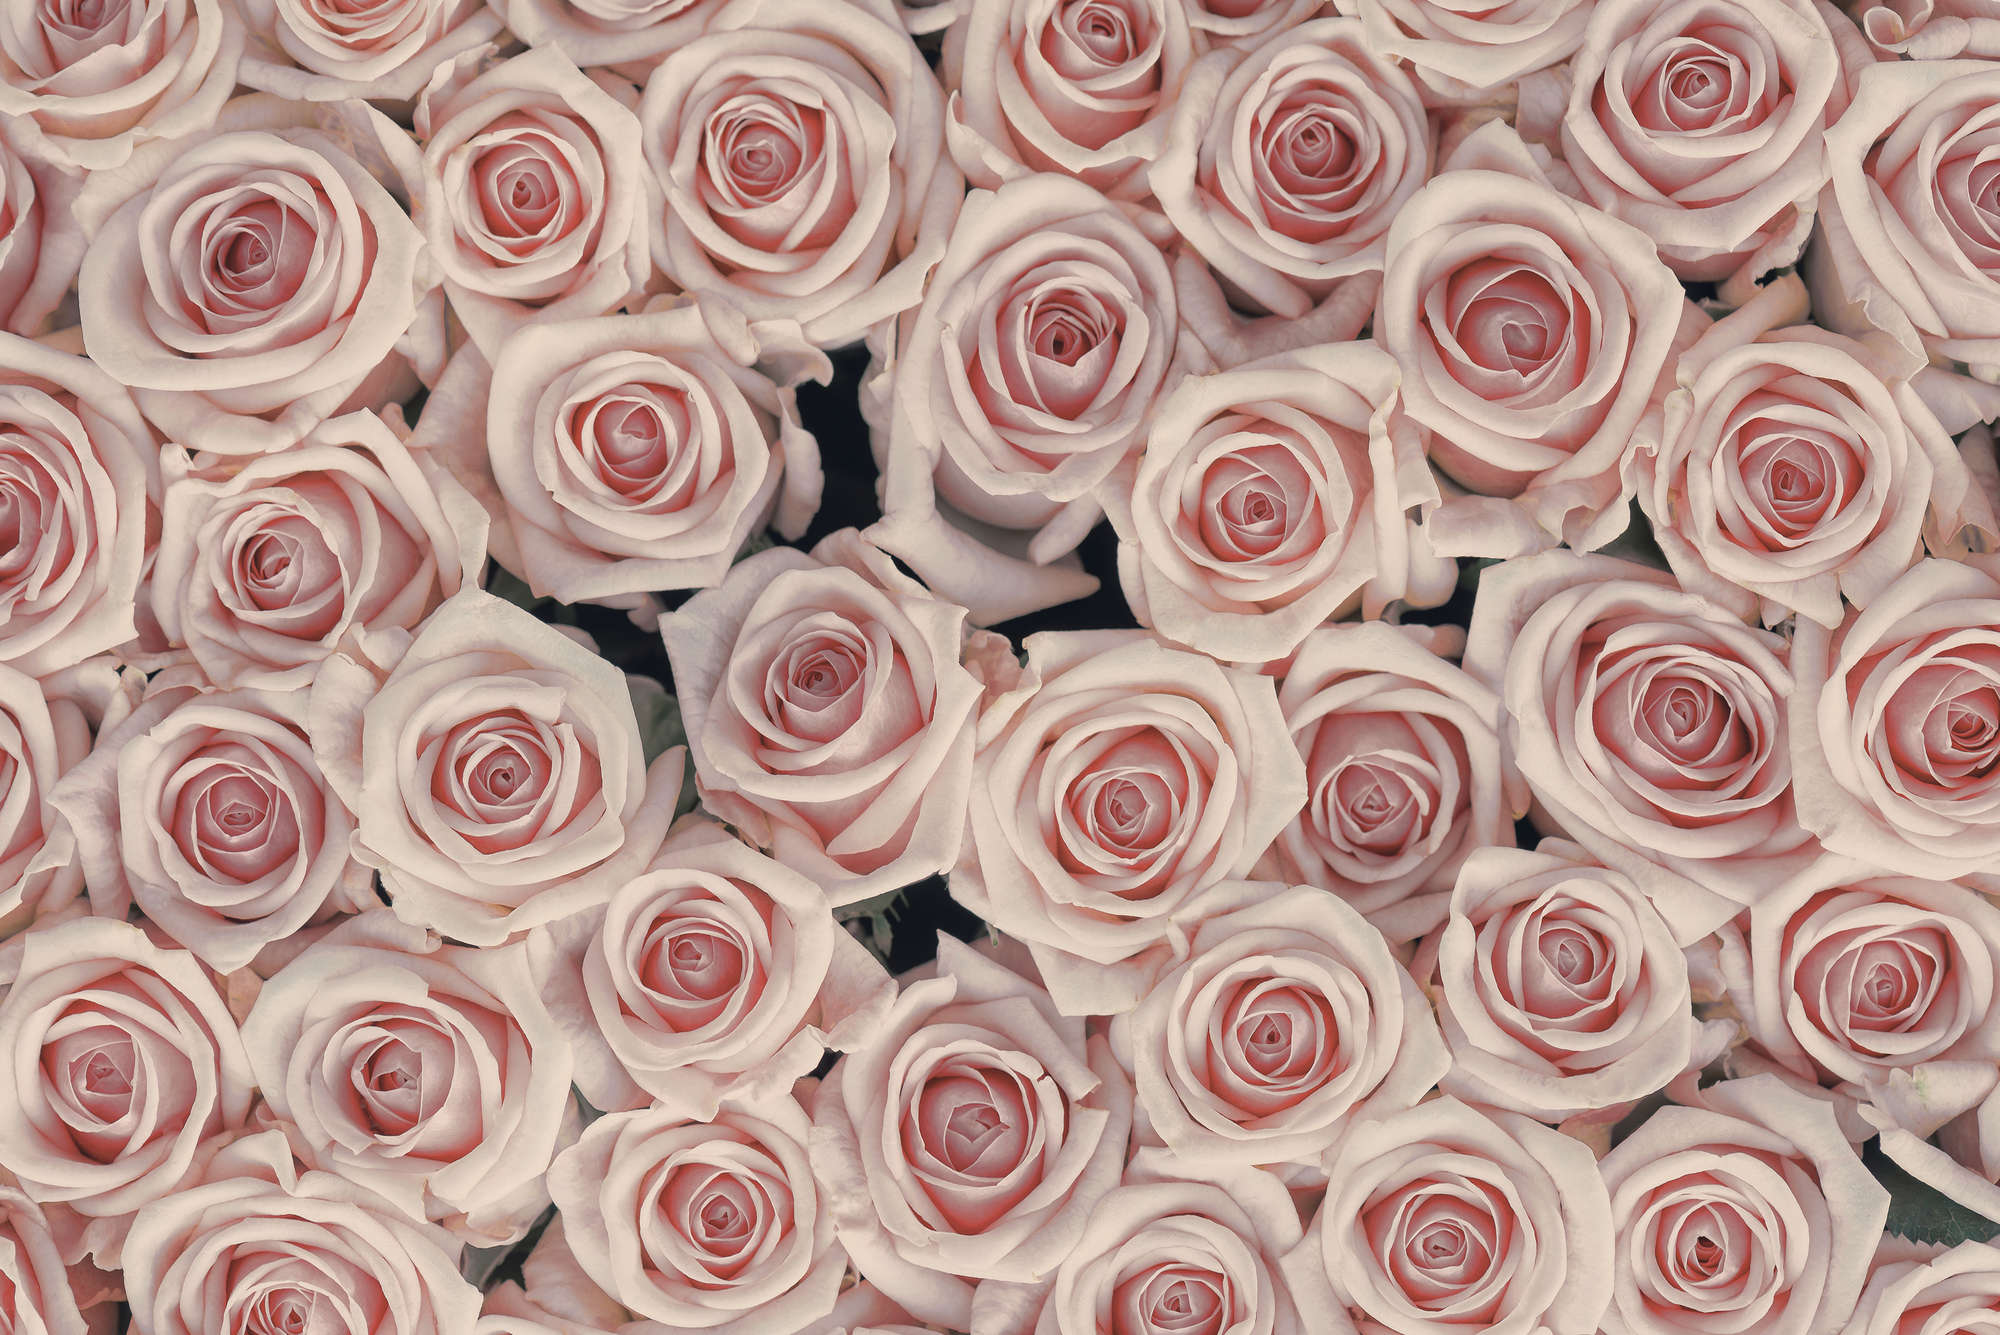             Papel pintado de plantas Rosas rosas y blancas sobre vellón liso mate
        